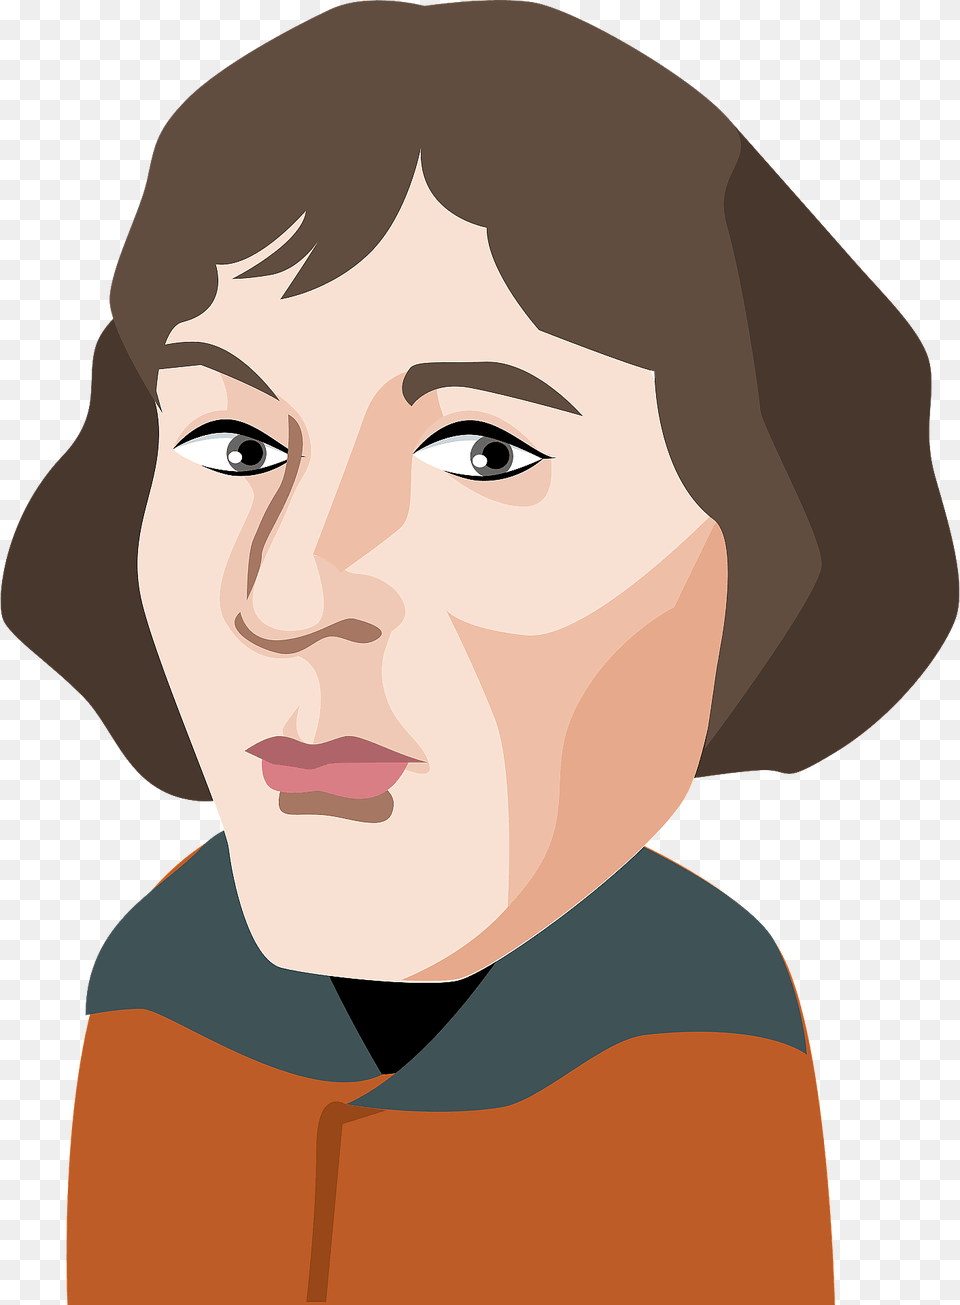 Nicolaus Copernicus Clipart, Adult, Portrait, Photography, Person Free Transparent Png